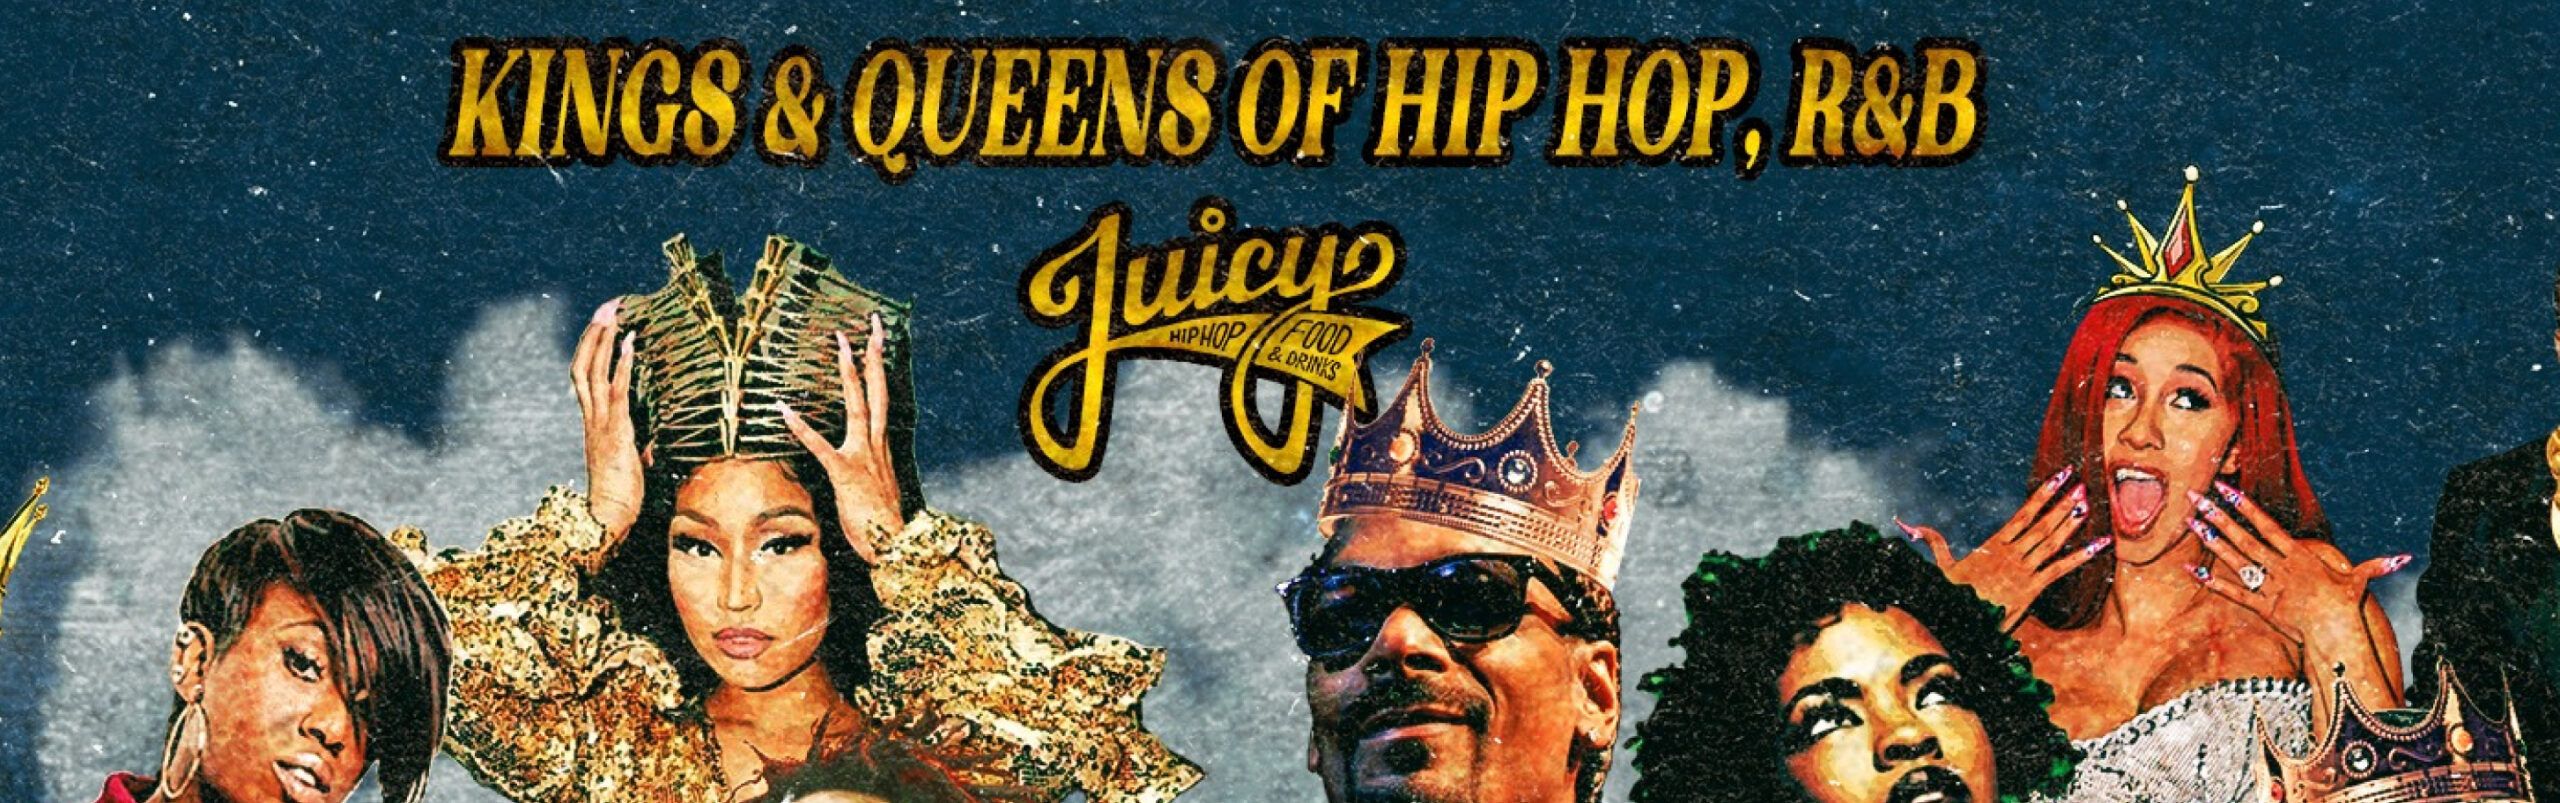 Juicy Koningsnacht: Kings & Queens of Hiphop header